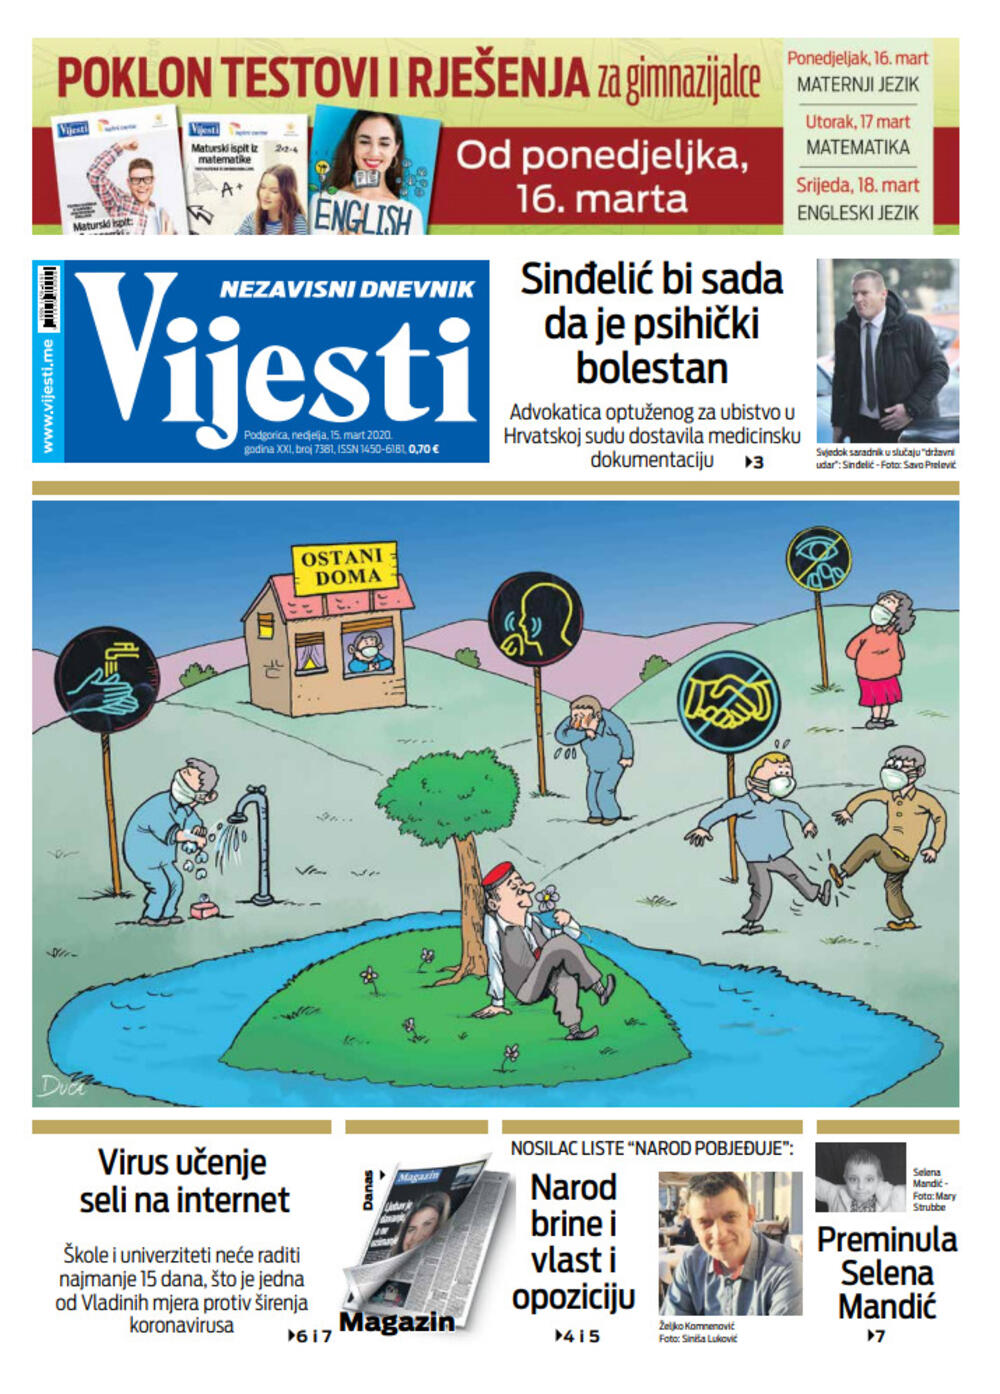 Naslovna strana "Vijesti" za 15. mart 2020., Foto: Vijesti